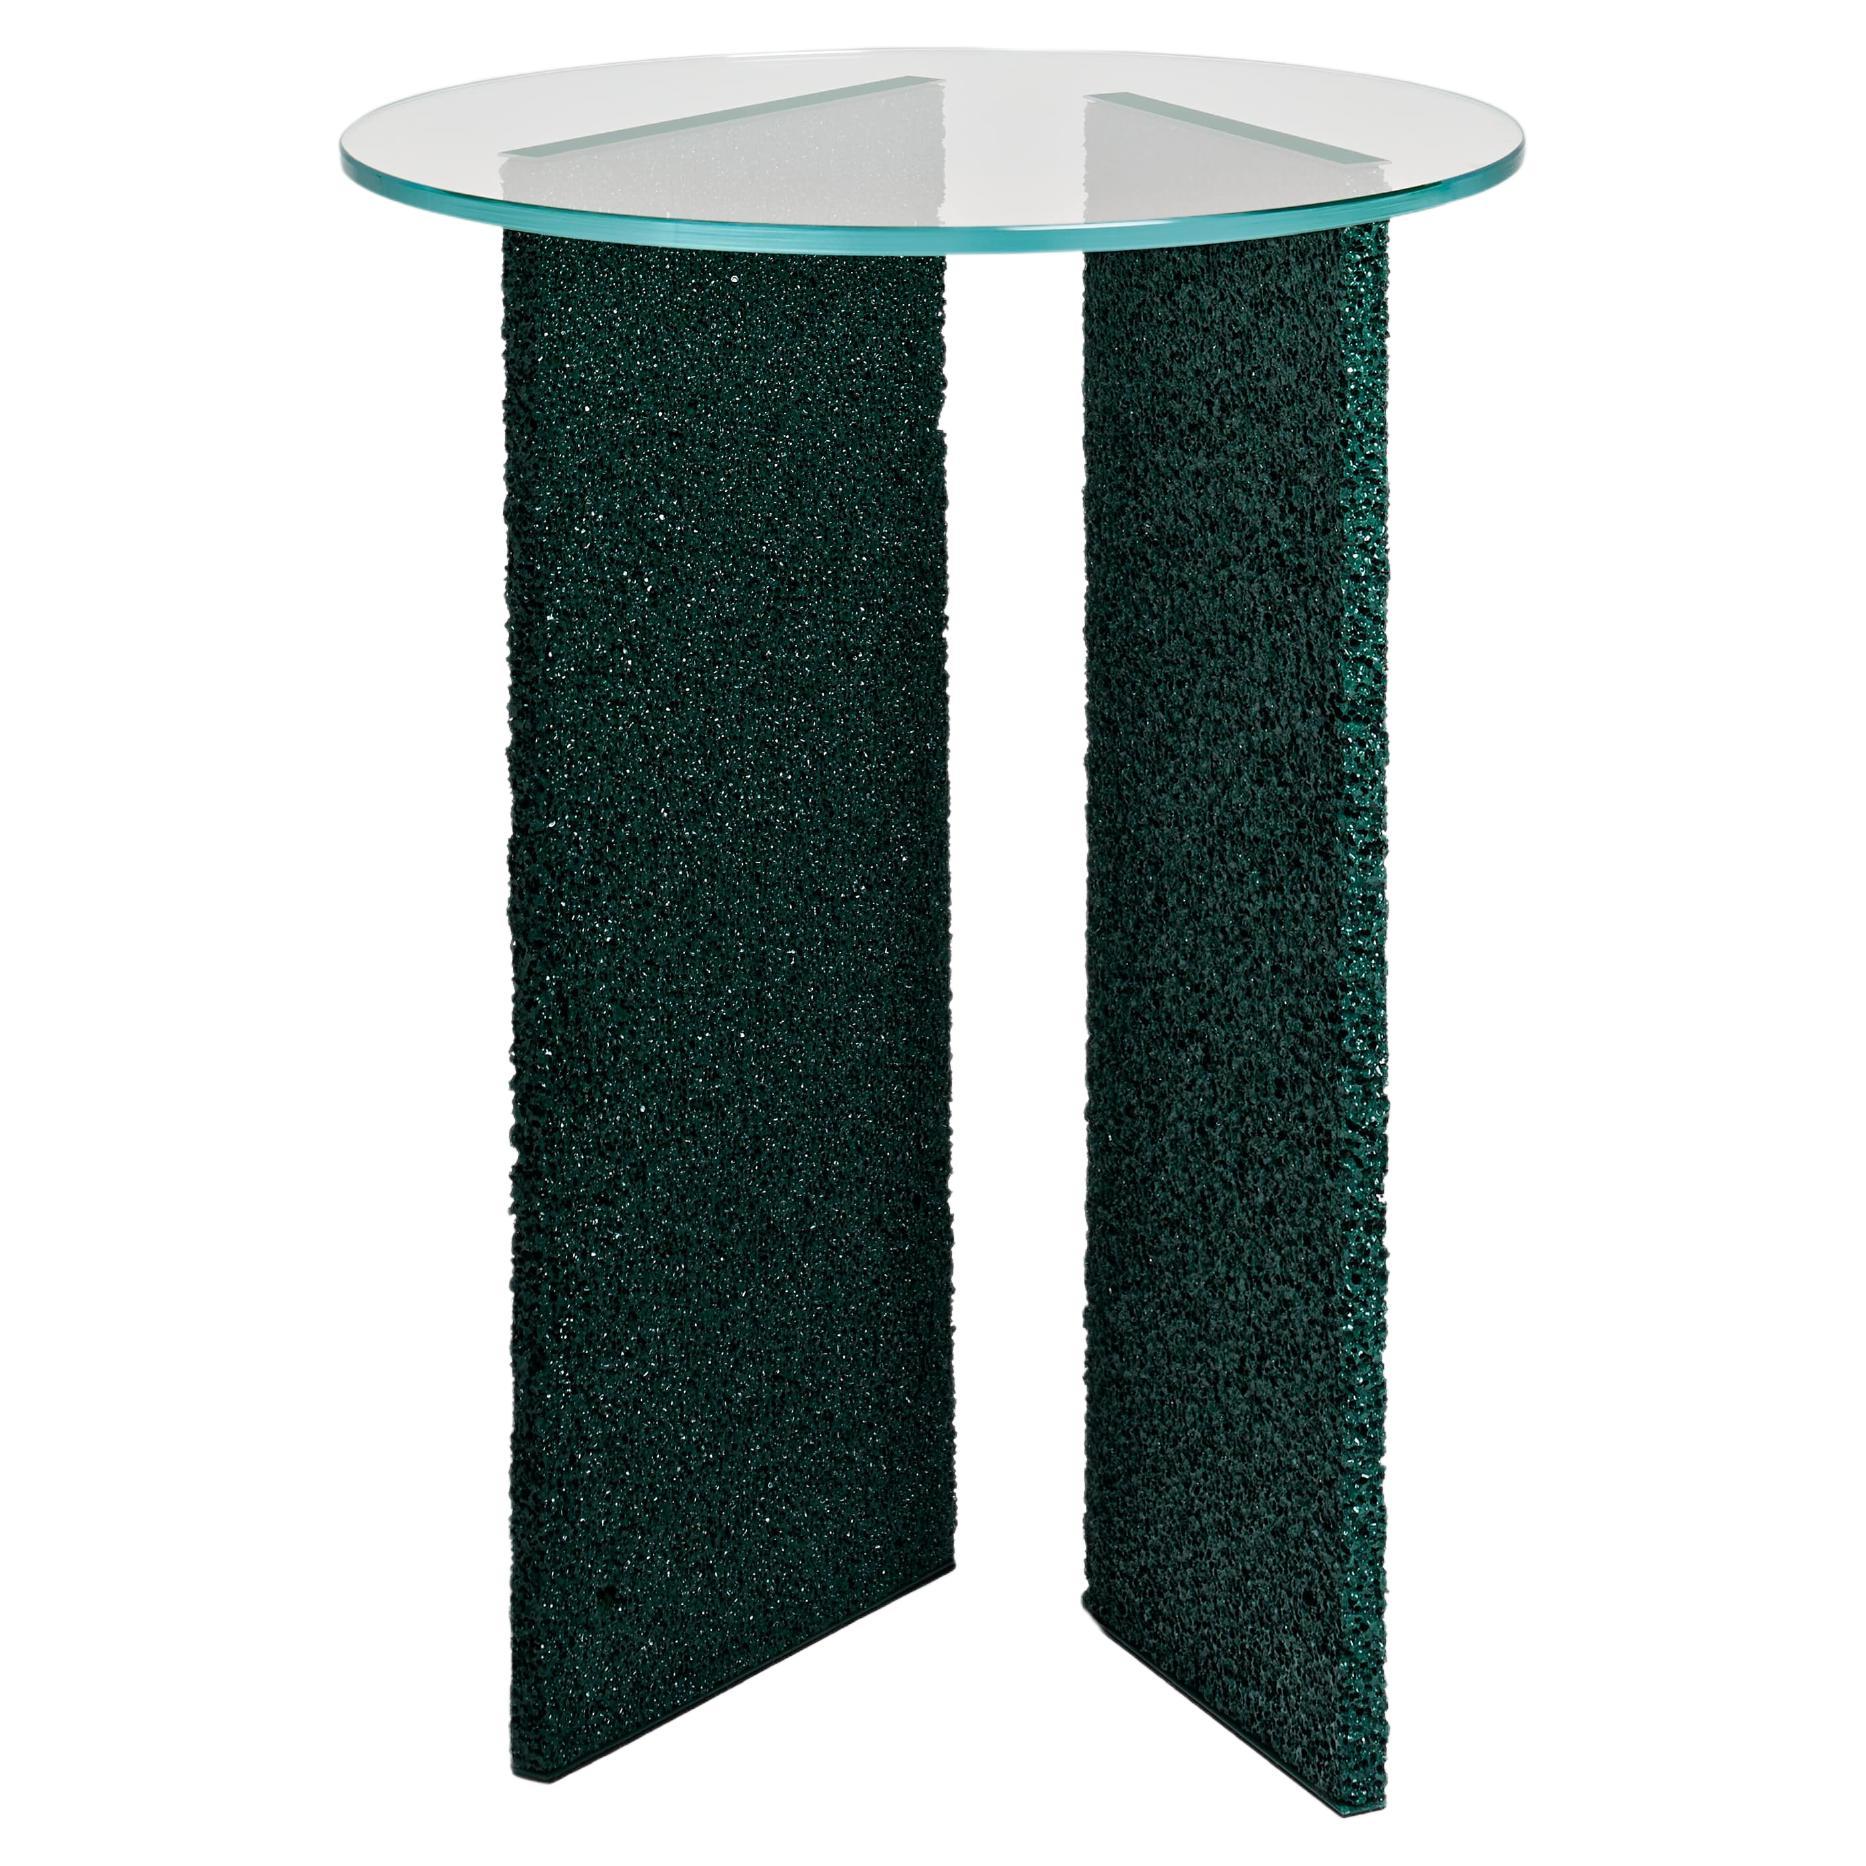 Table d'appoint SLAB vert foncé texturé avec plateau en verre